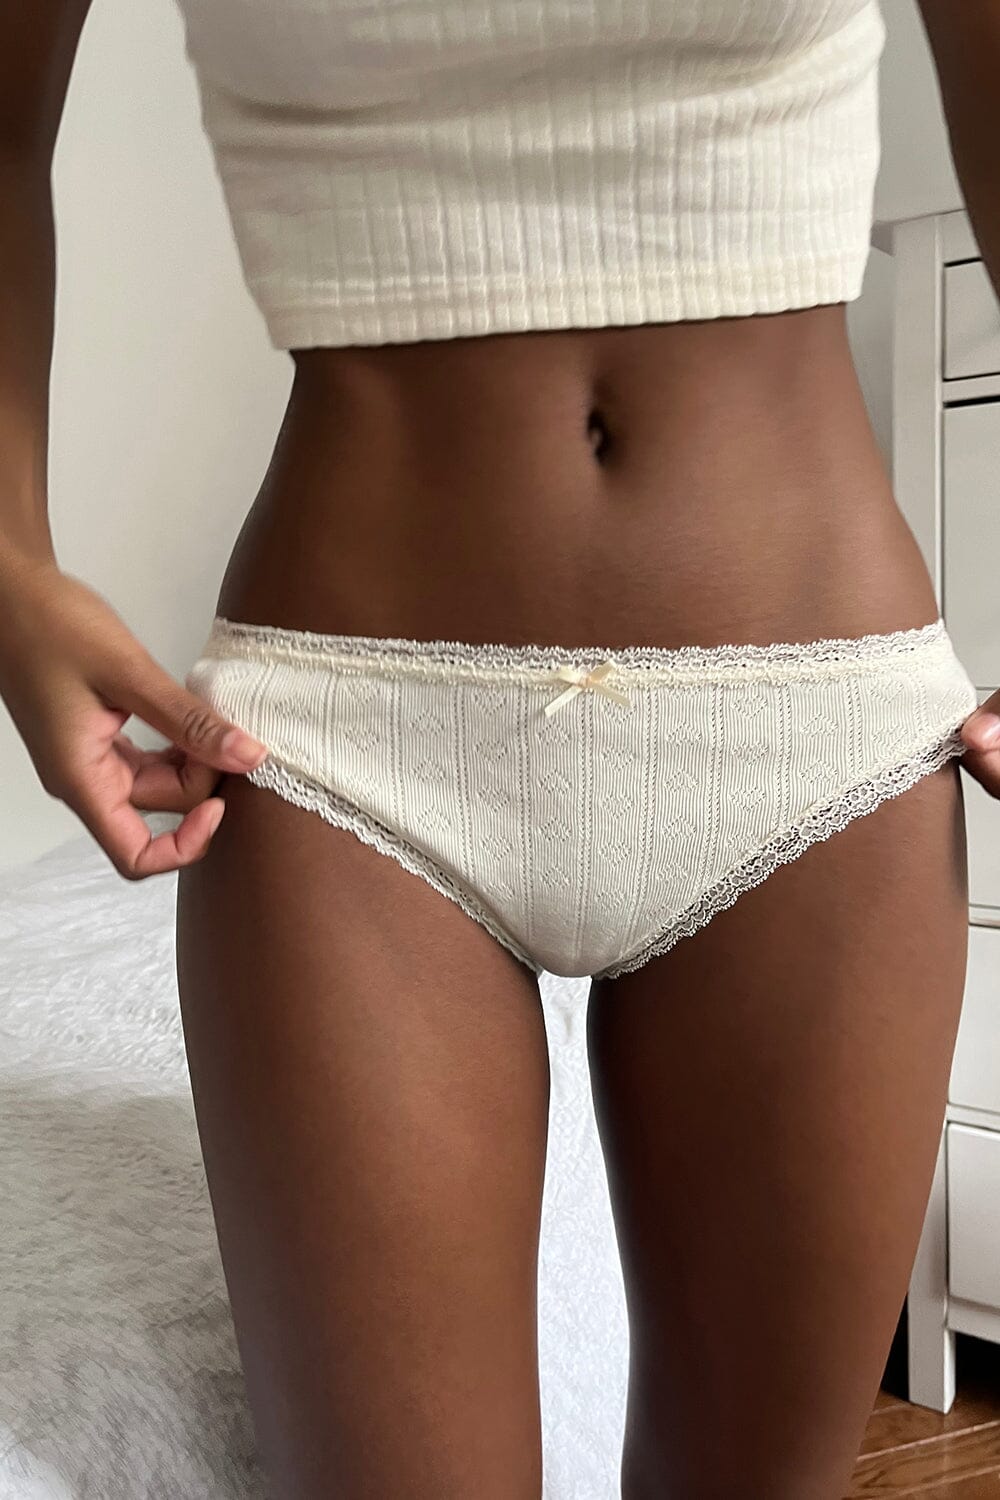 Underwear – Brandy Melville